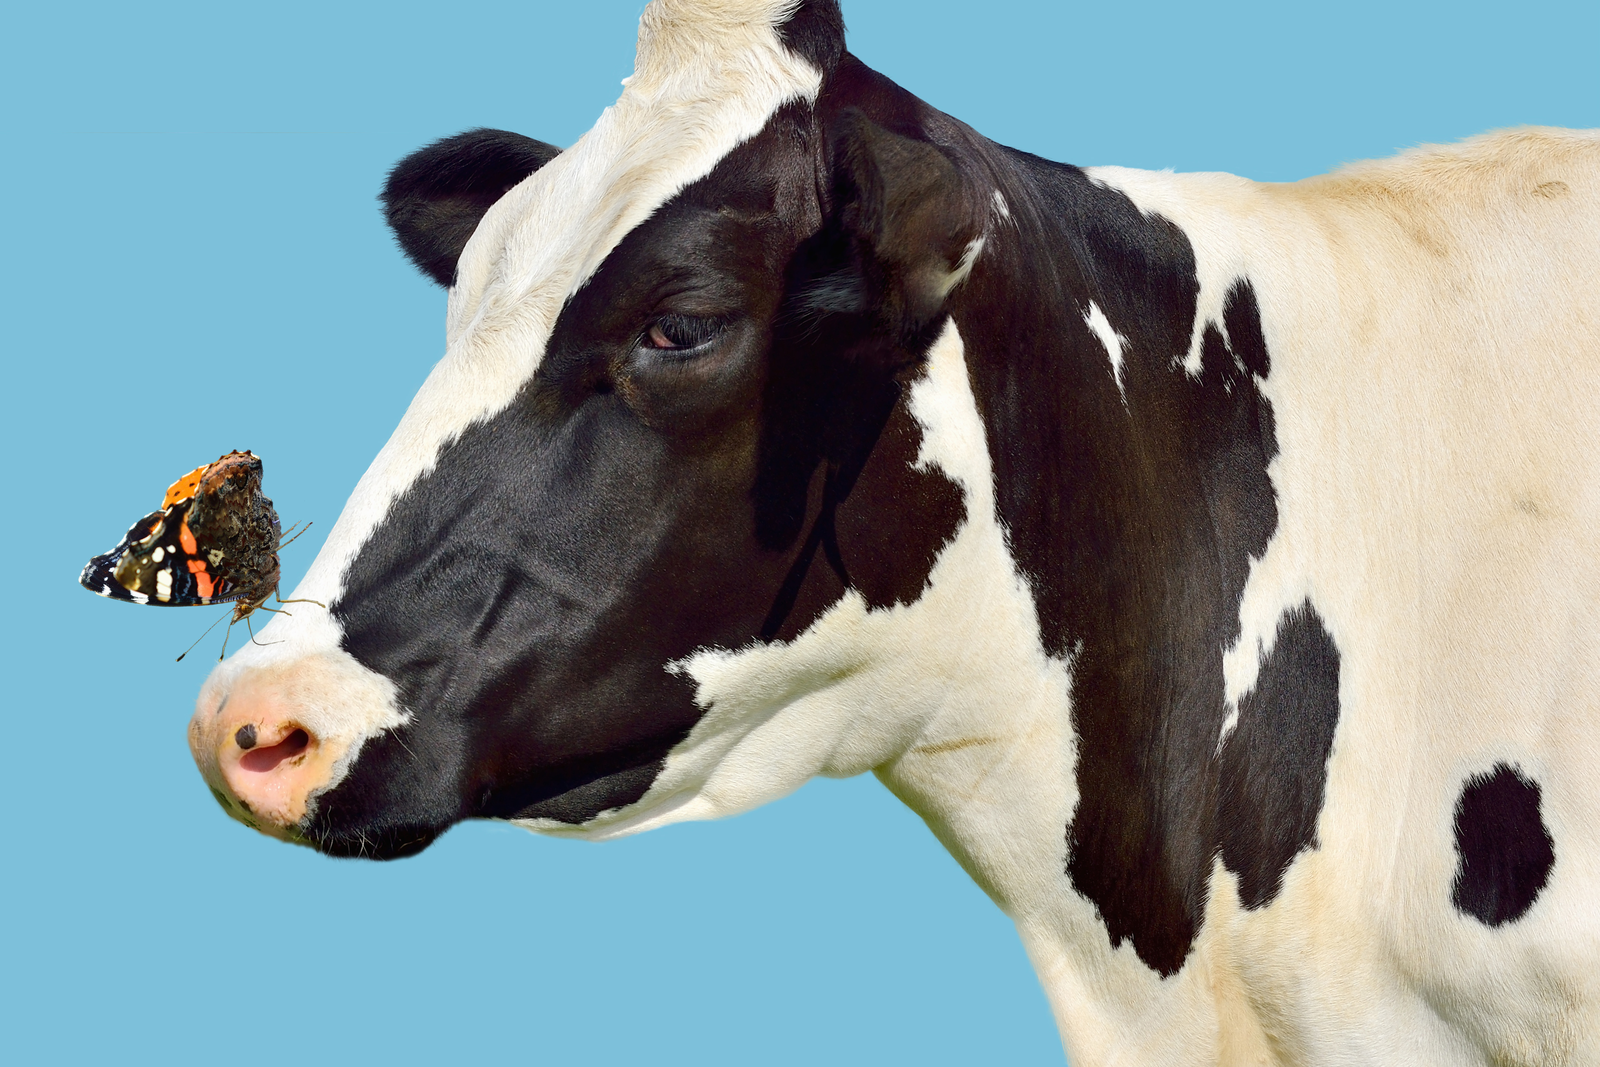 Happy cows make more nutritious milk